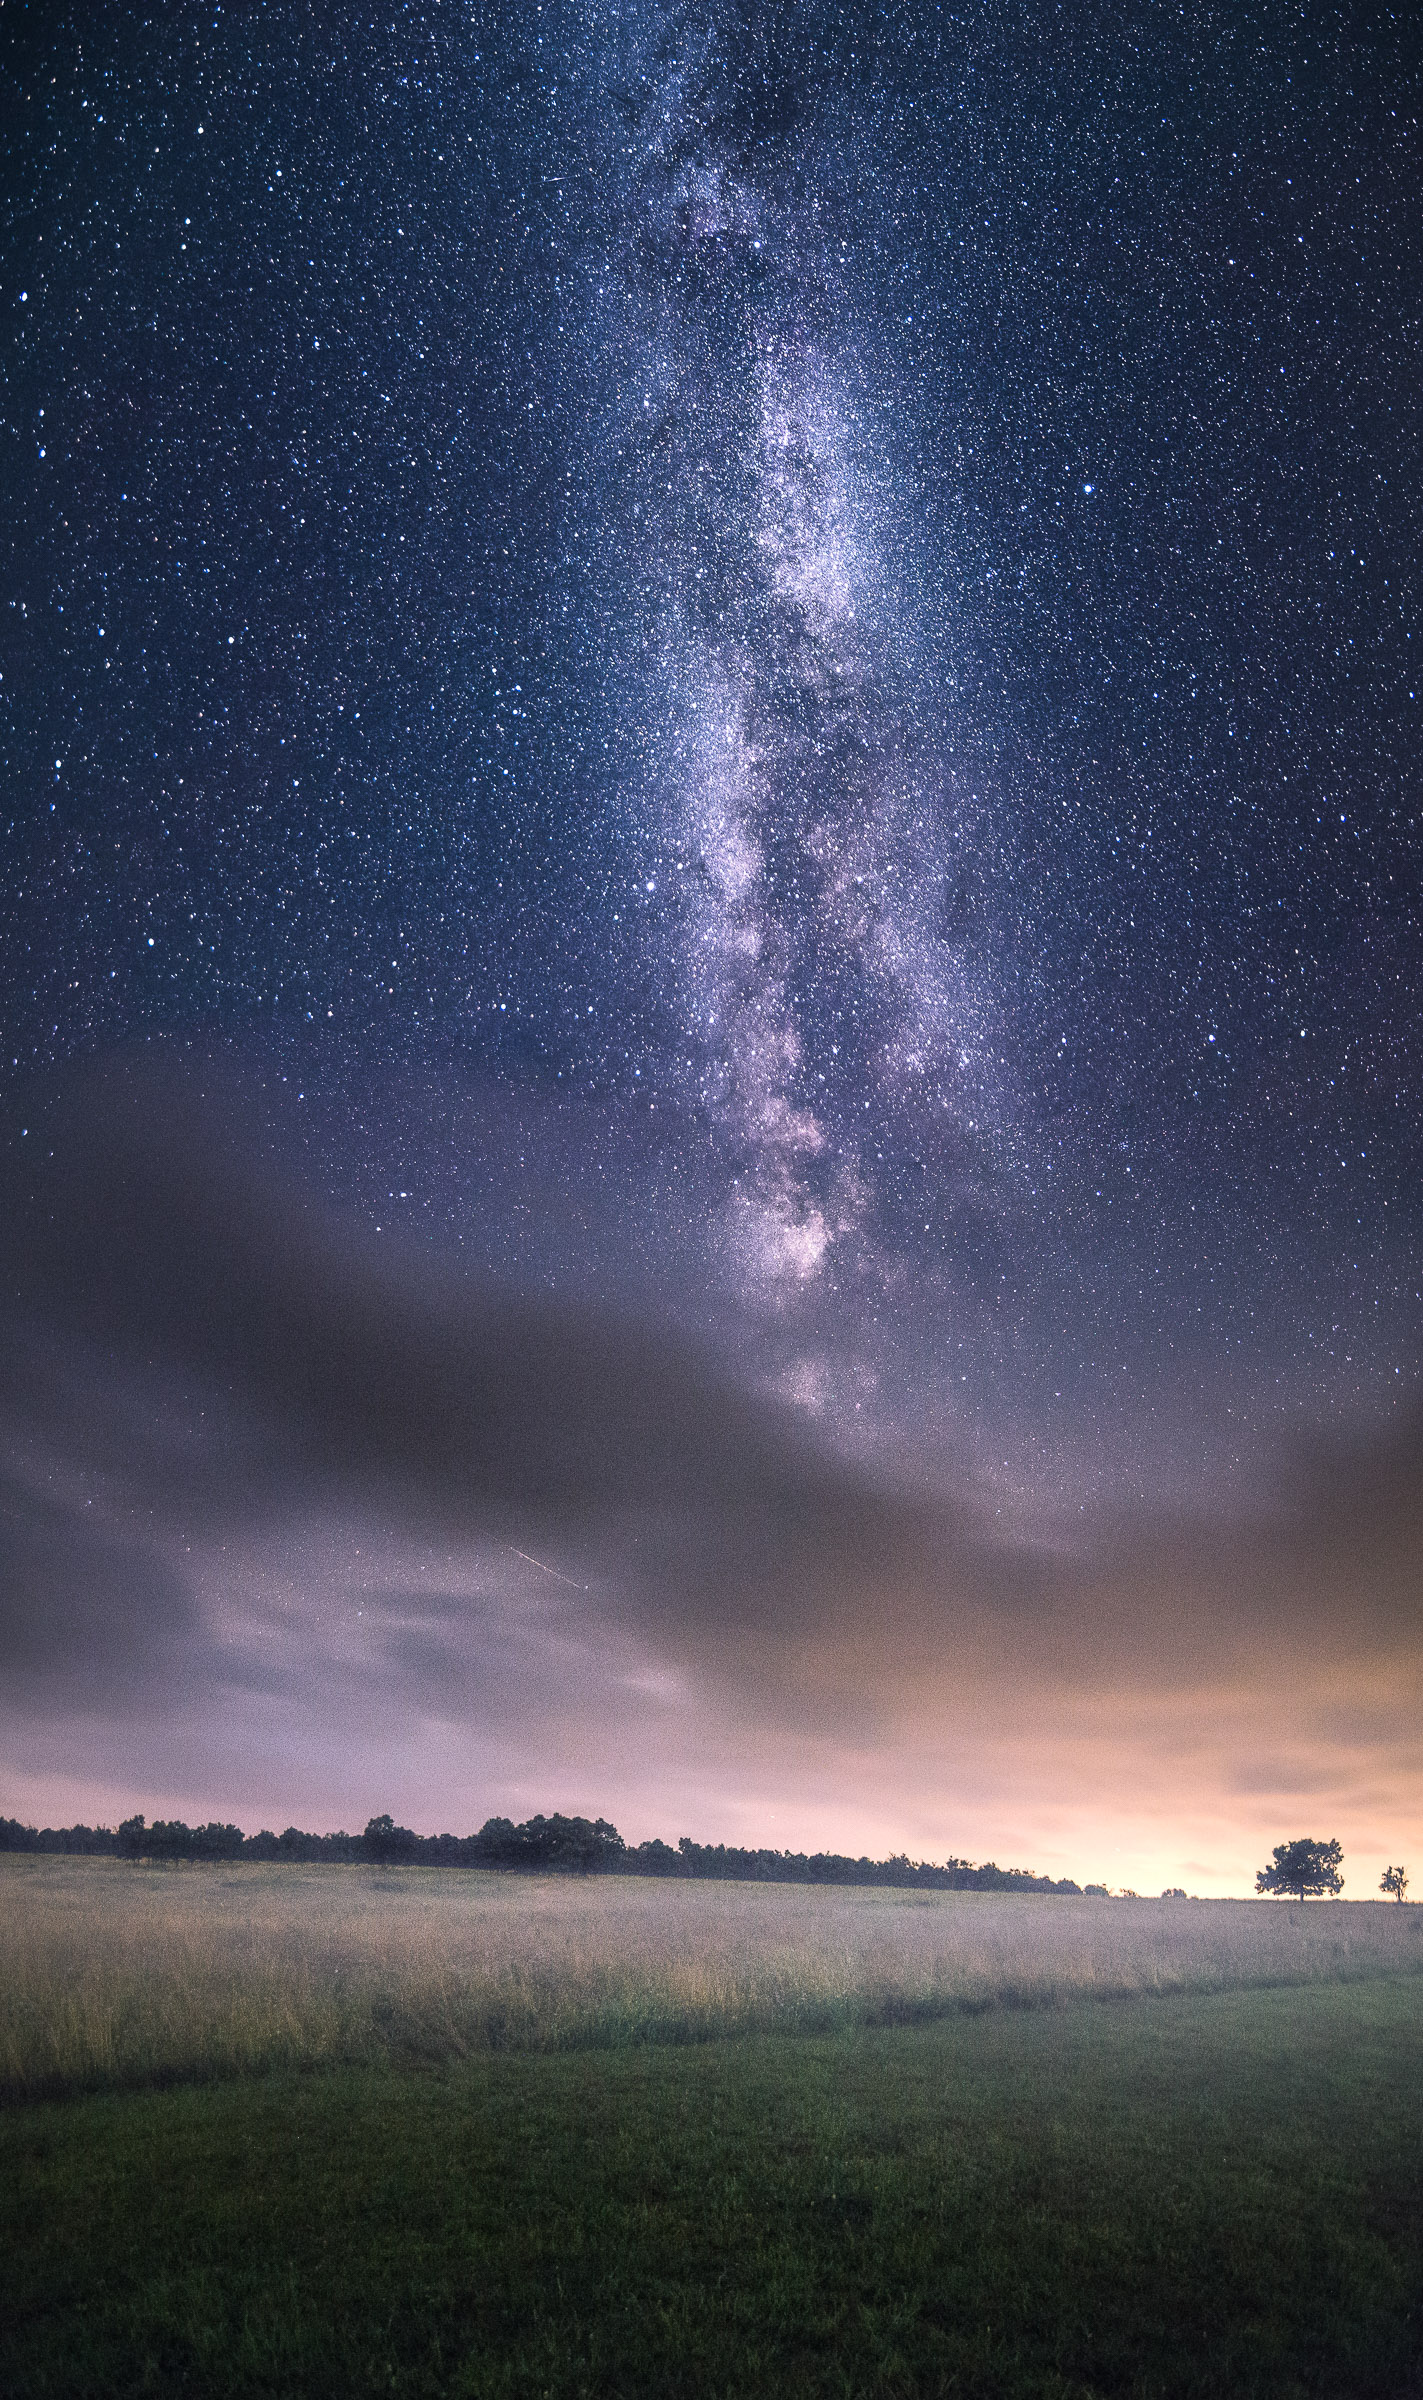 Milky Way Meets Meadow in Skywatcher Photo